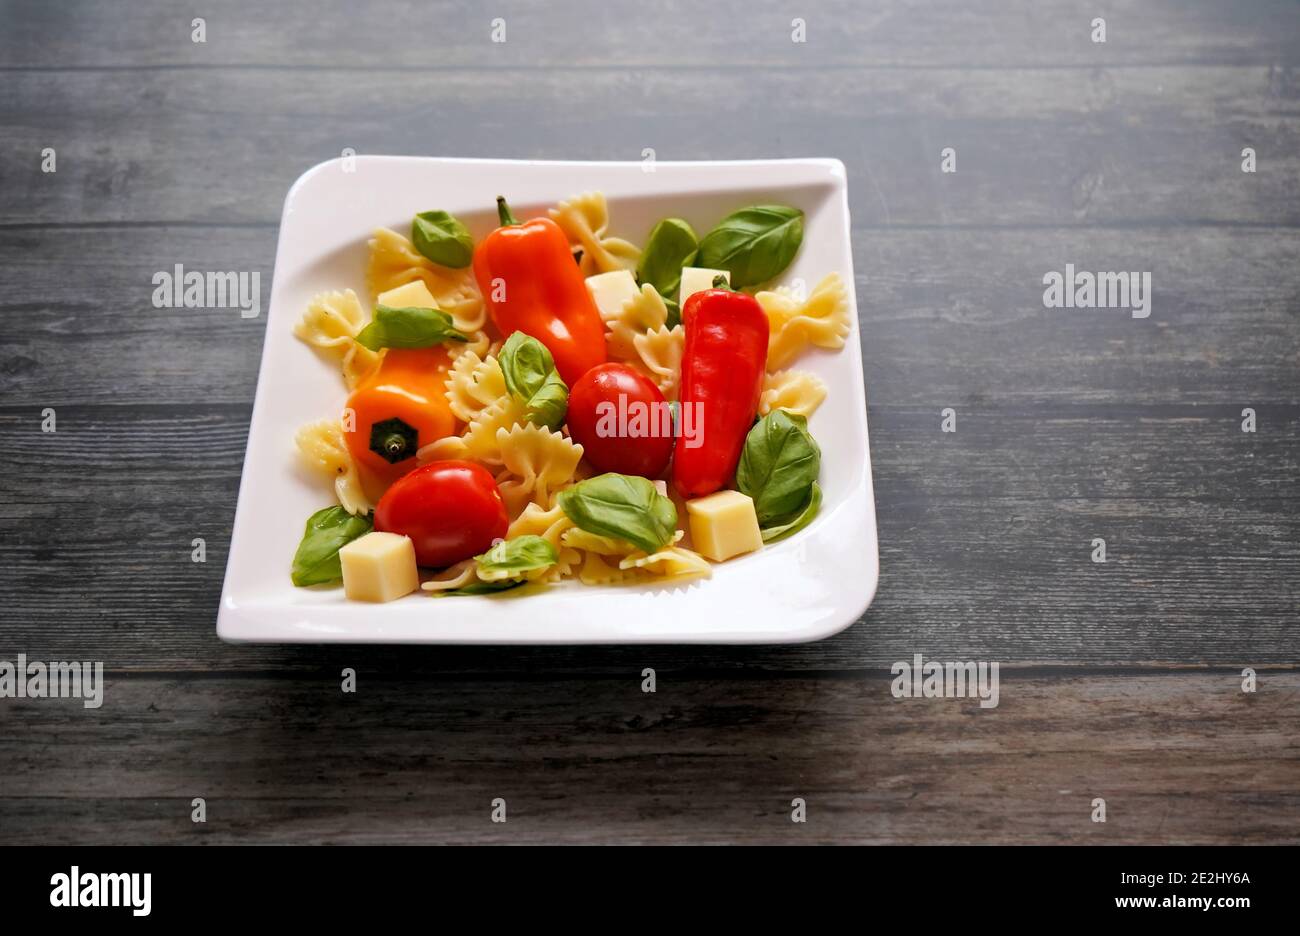 Frische Zutaten für einen gesunden Salat mit Nudeln, Tomaten, Paprika, Käsewürfeln und Basilikum auf einem weißen quadratischen Teller. Dunkler Holzhintergrund. Stockfoto